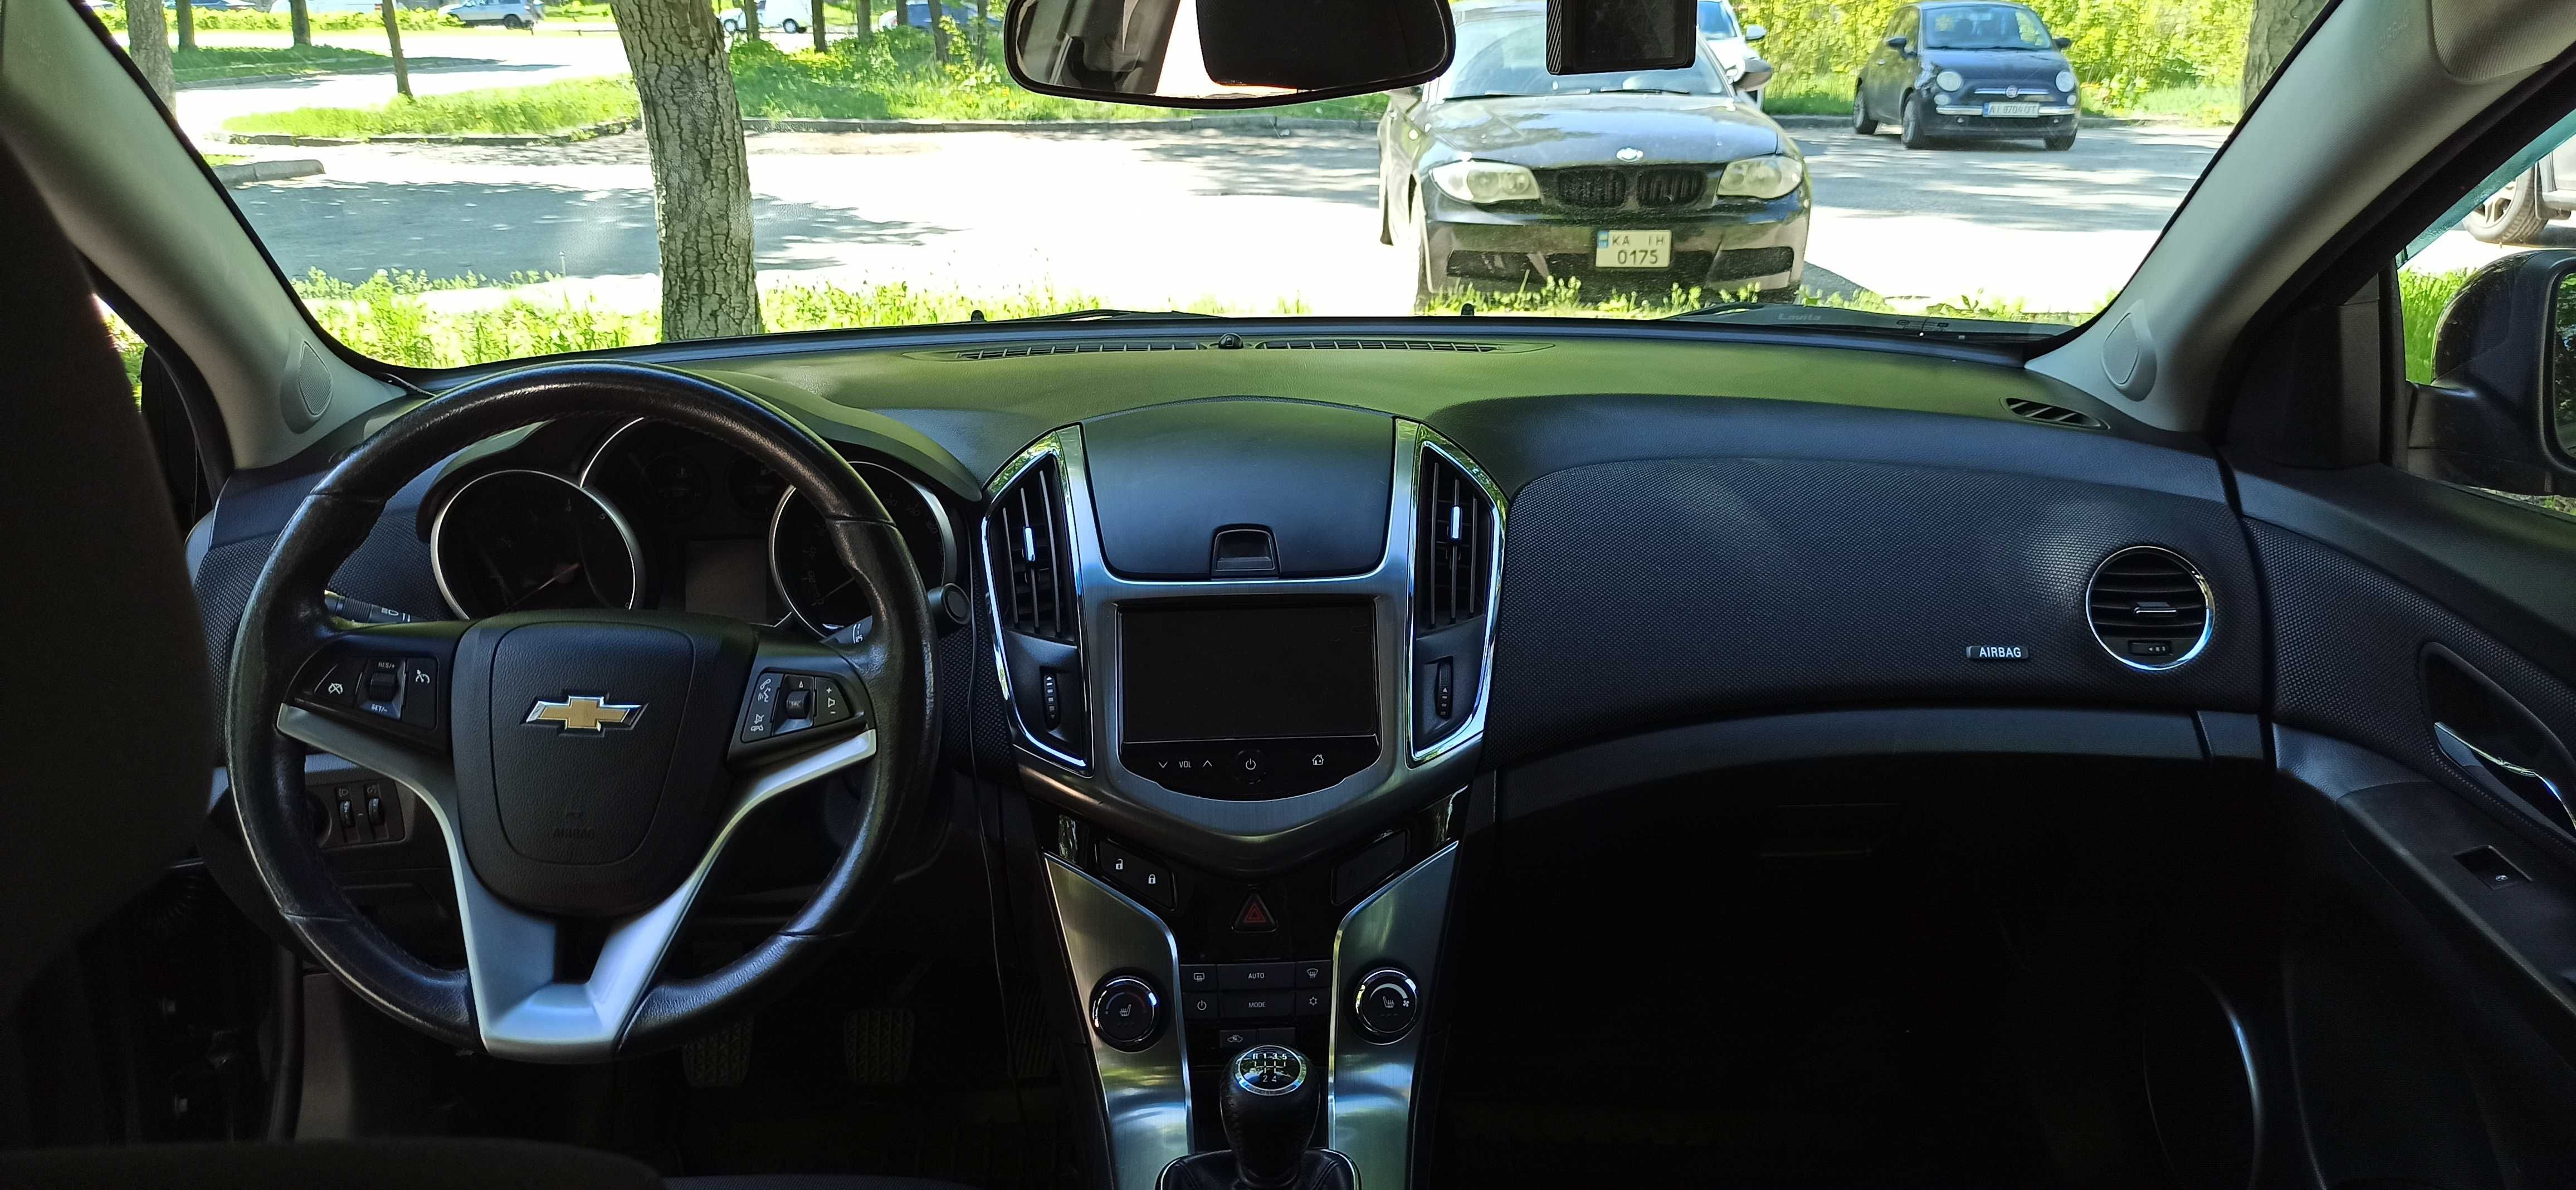 Chevrolet Cruze 1.8 2014